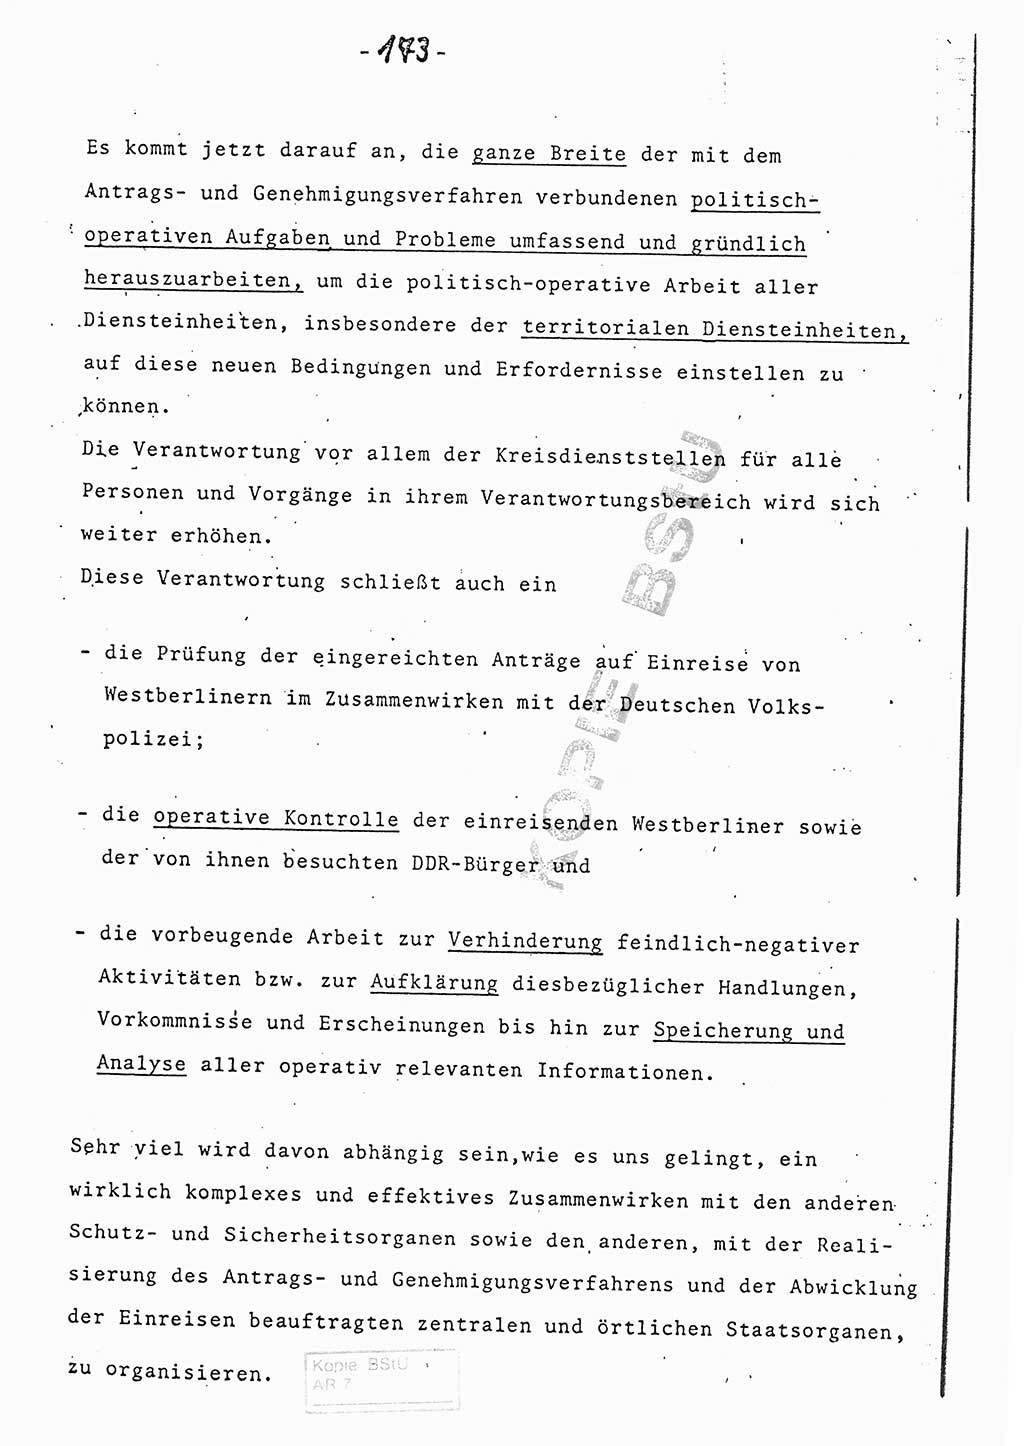 Referat (Entwurf) des Genossen Minister (Generaloberst Erich Mielke) auf der Dienstkonferenz 1972, Ministerium für Staatssicherheit (MfS) [Deutsche Demokratische Republik (DDR)], Der Minister, Geheime Verschlußsache (GVS) 008-150/72, Berlin 25.2.1972, Seite 173 (Ref. Entw. DK MfS DDR Min. GVS 008-150/72 1972, S. 173)